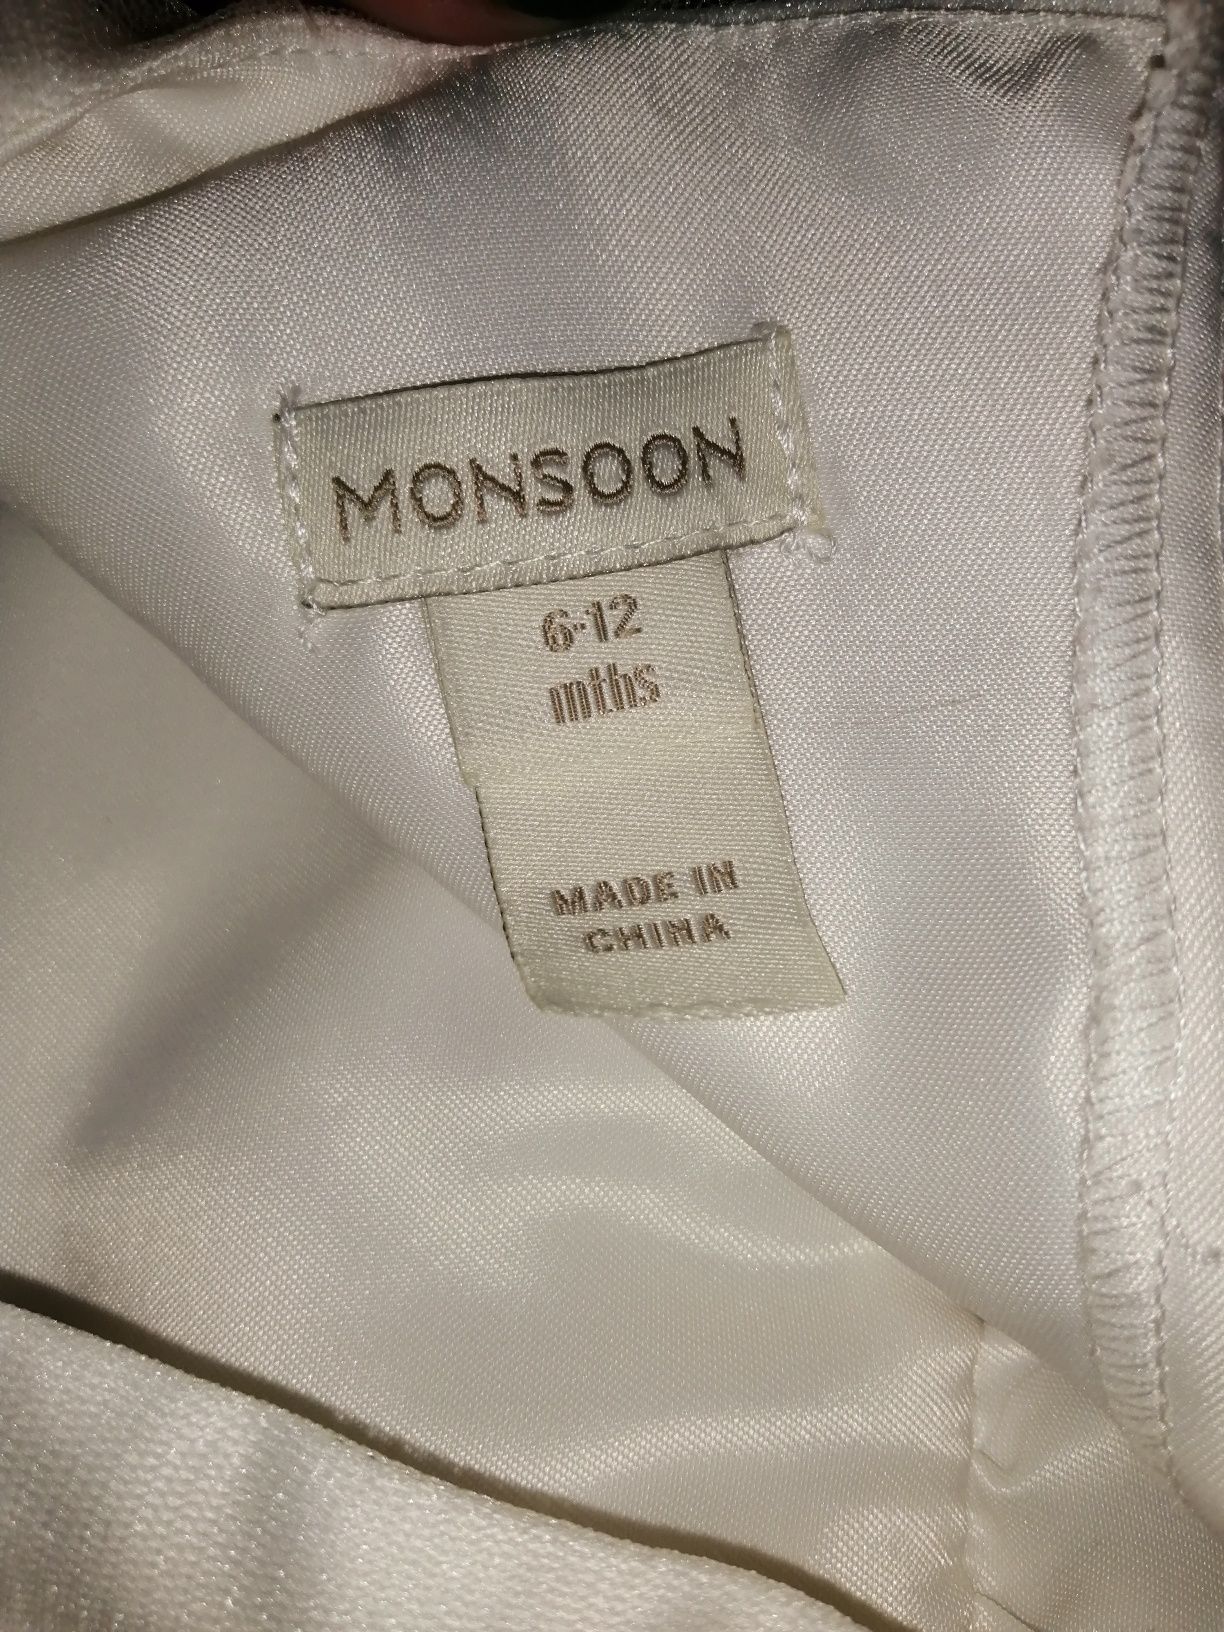 Нарядные платье Monsoon 6-12мес